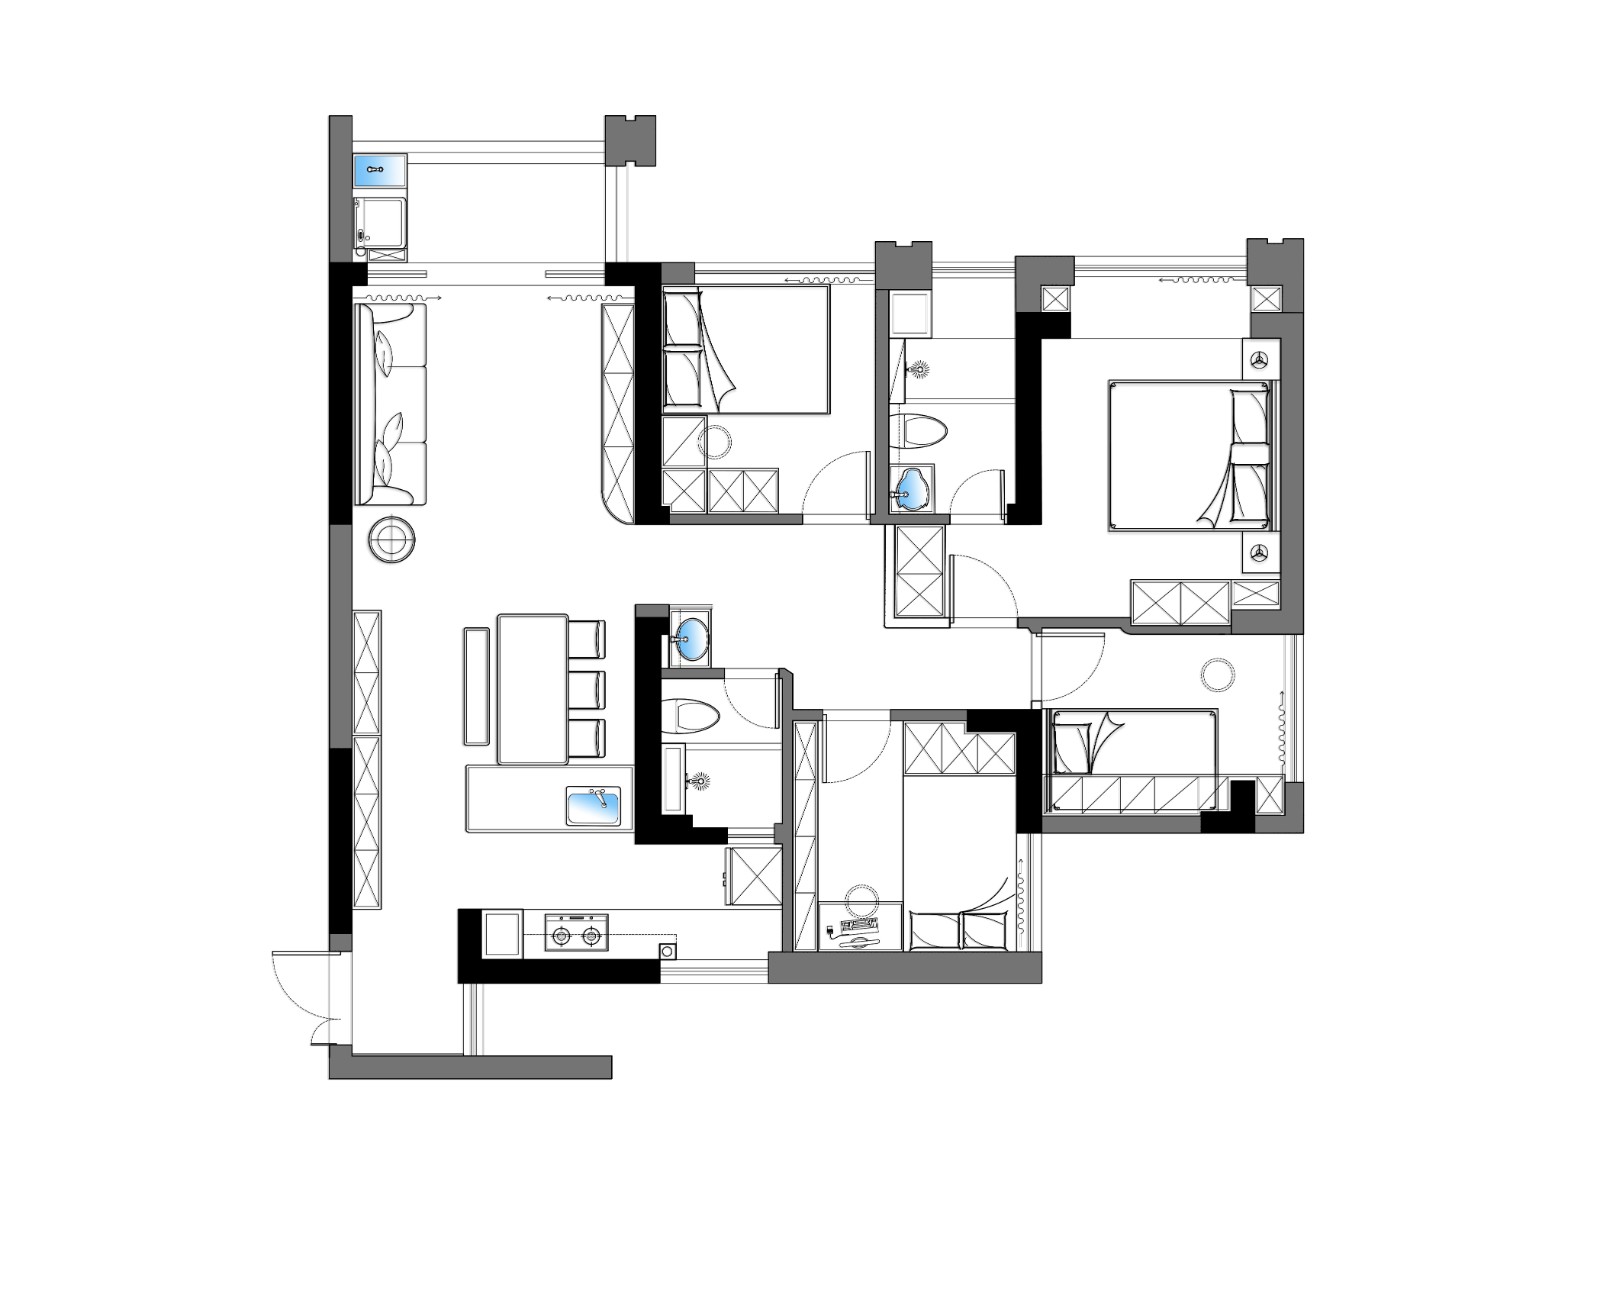 110现代三房装修效果图,诠释简约纯粹的生活美学装修案例效果图-美广网